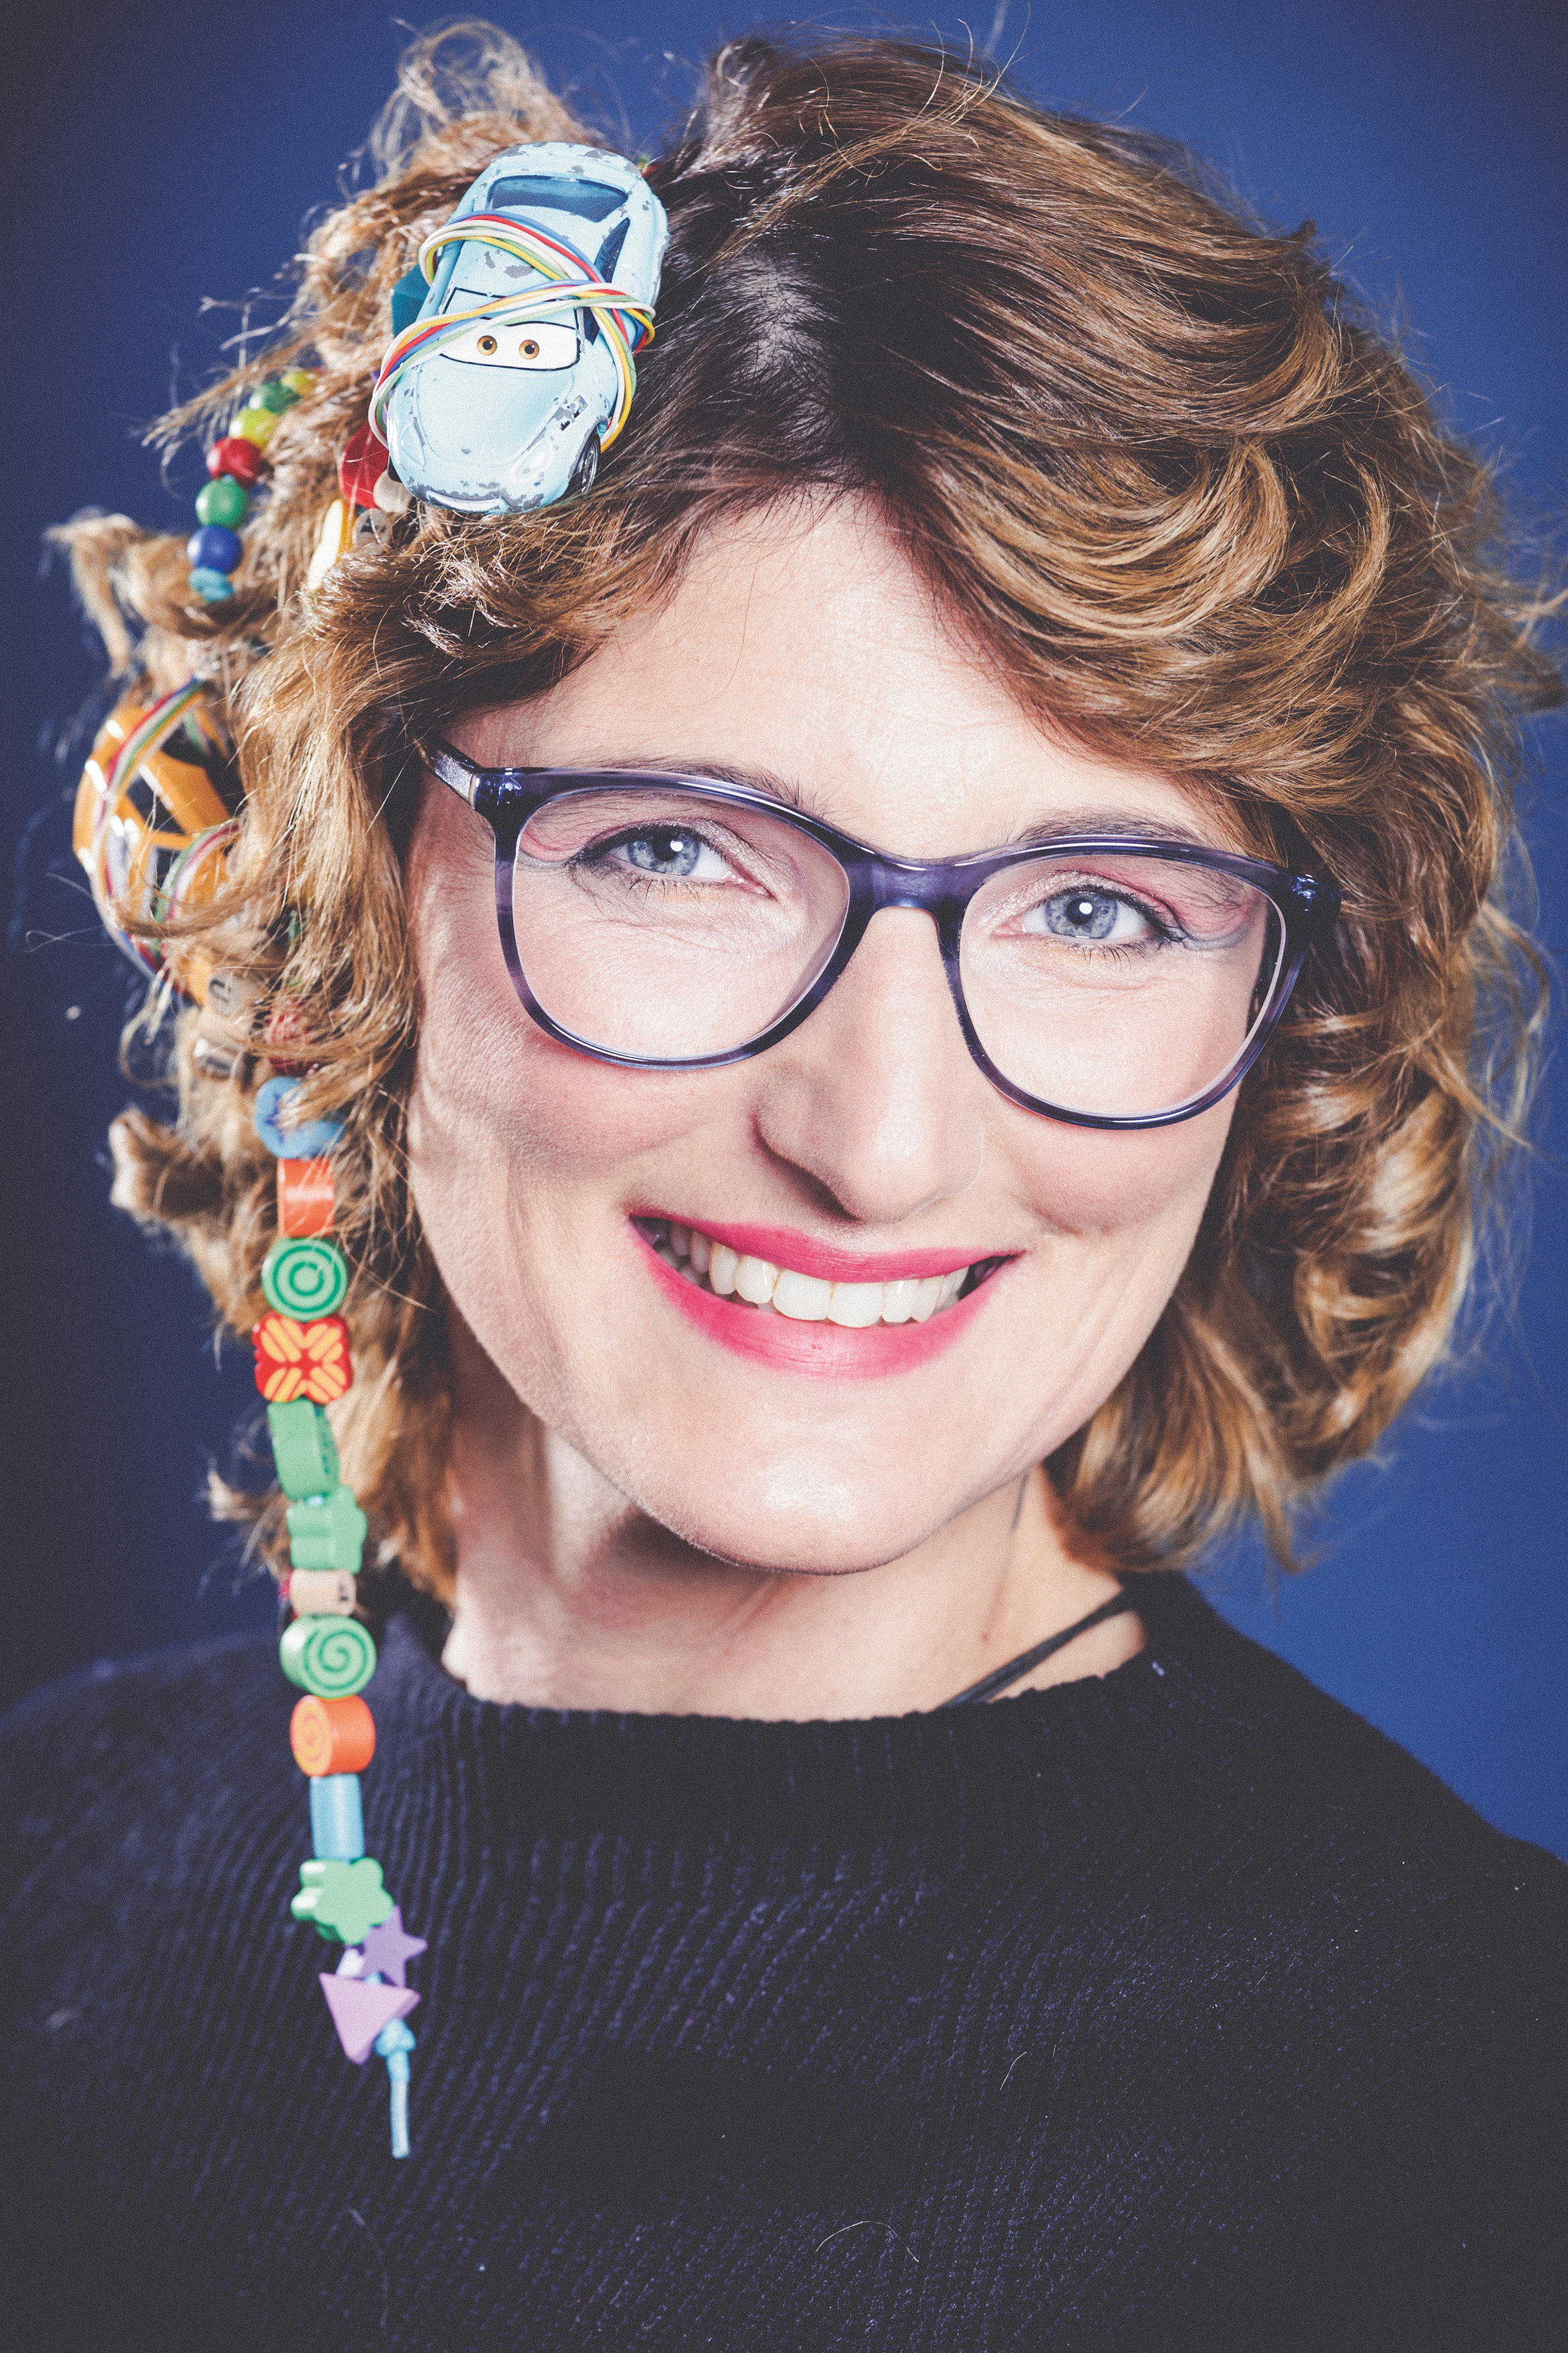 Porträt einer brünetten, lächelnden Frau mit einem Spielzeugauto und bunten Perlenketten im Haar